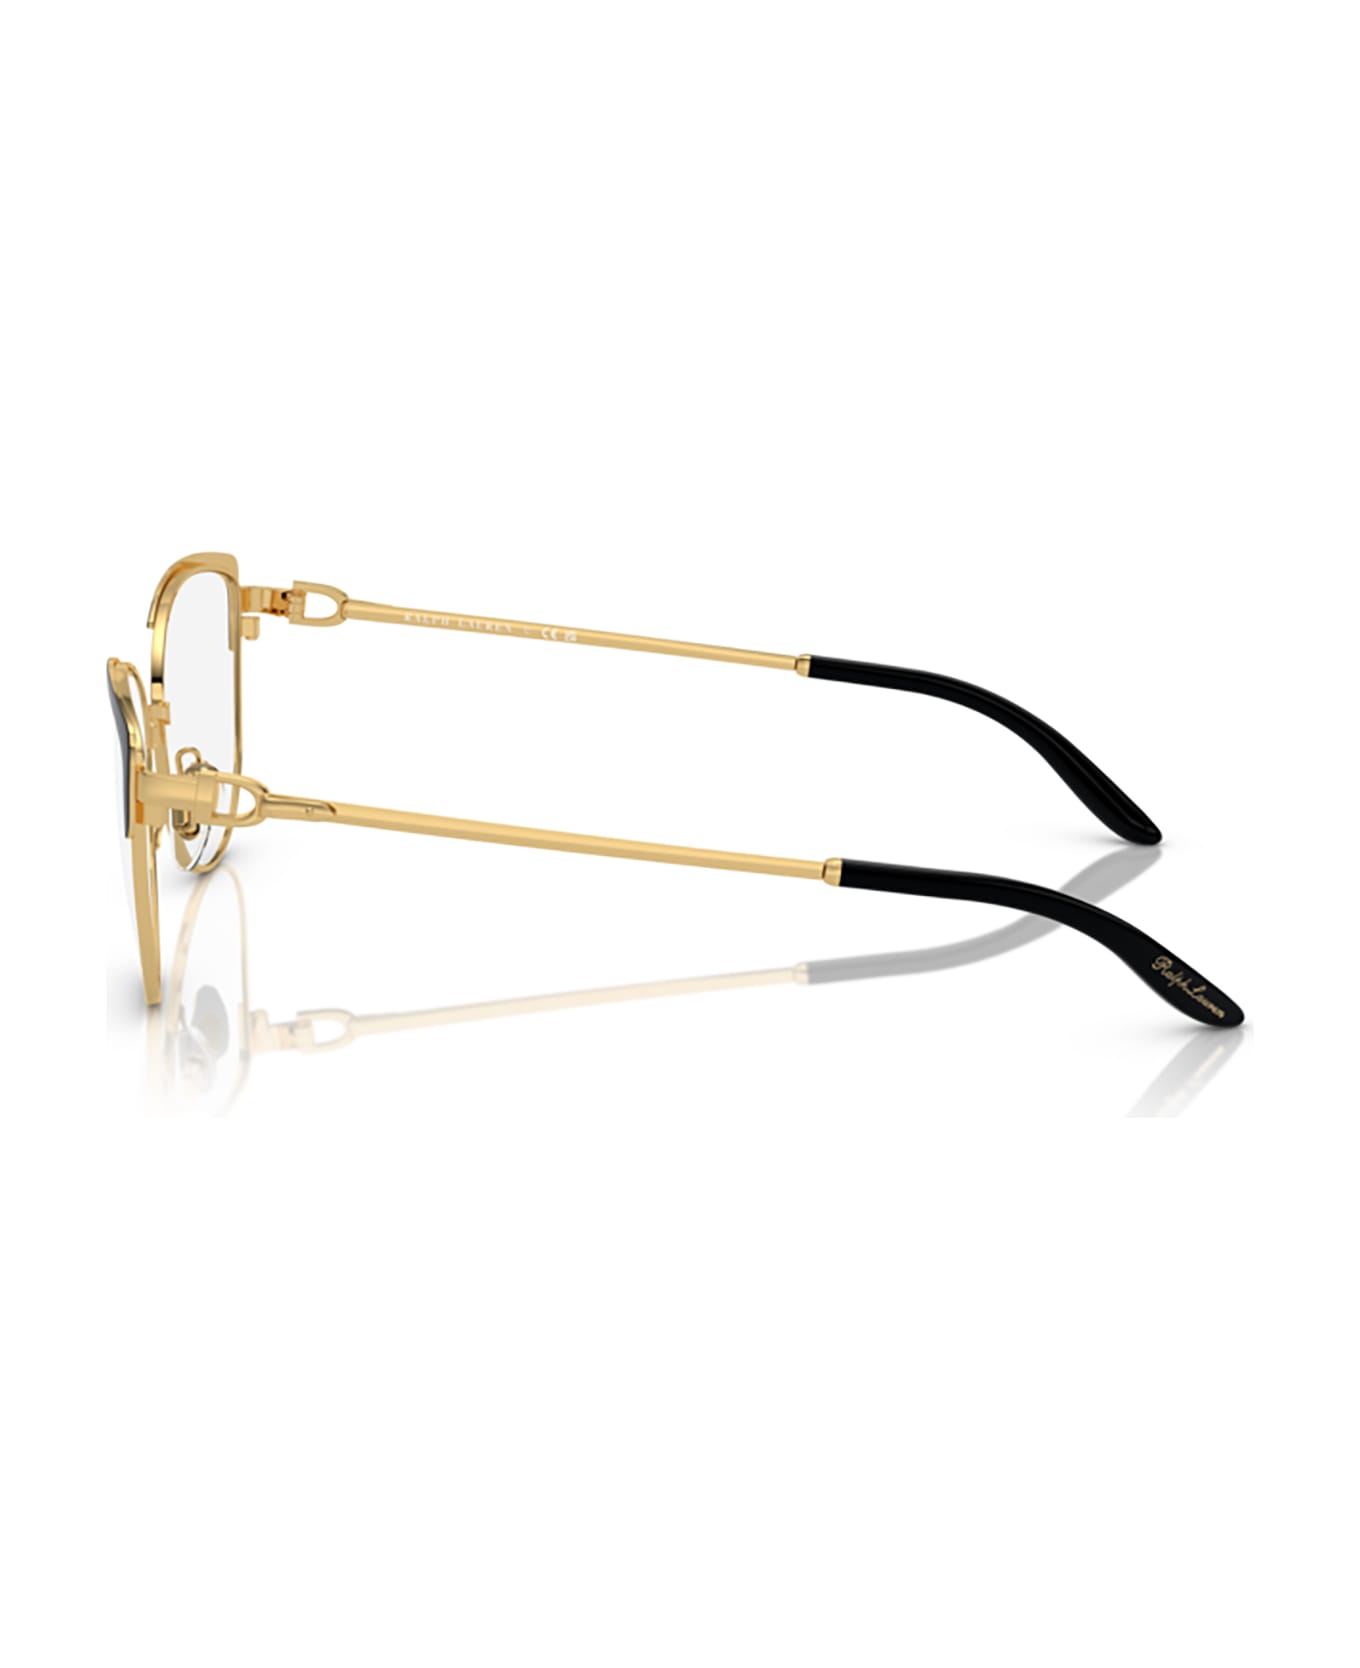 Ralph Lauren Rl5123 Black / Gold Glasses - Black / Gold アイウェア